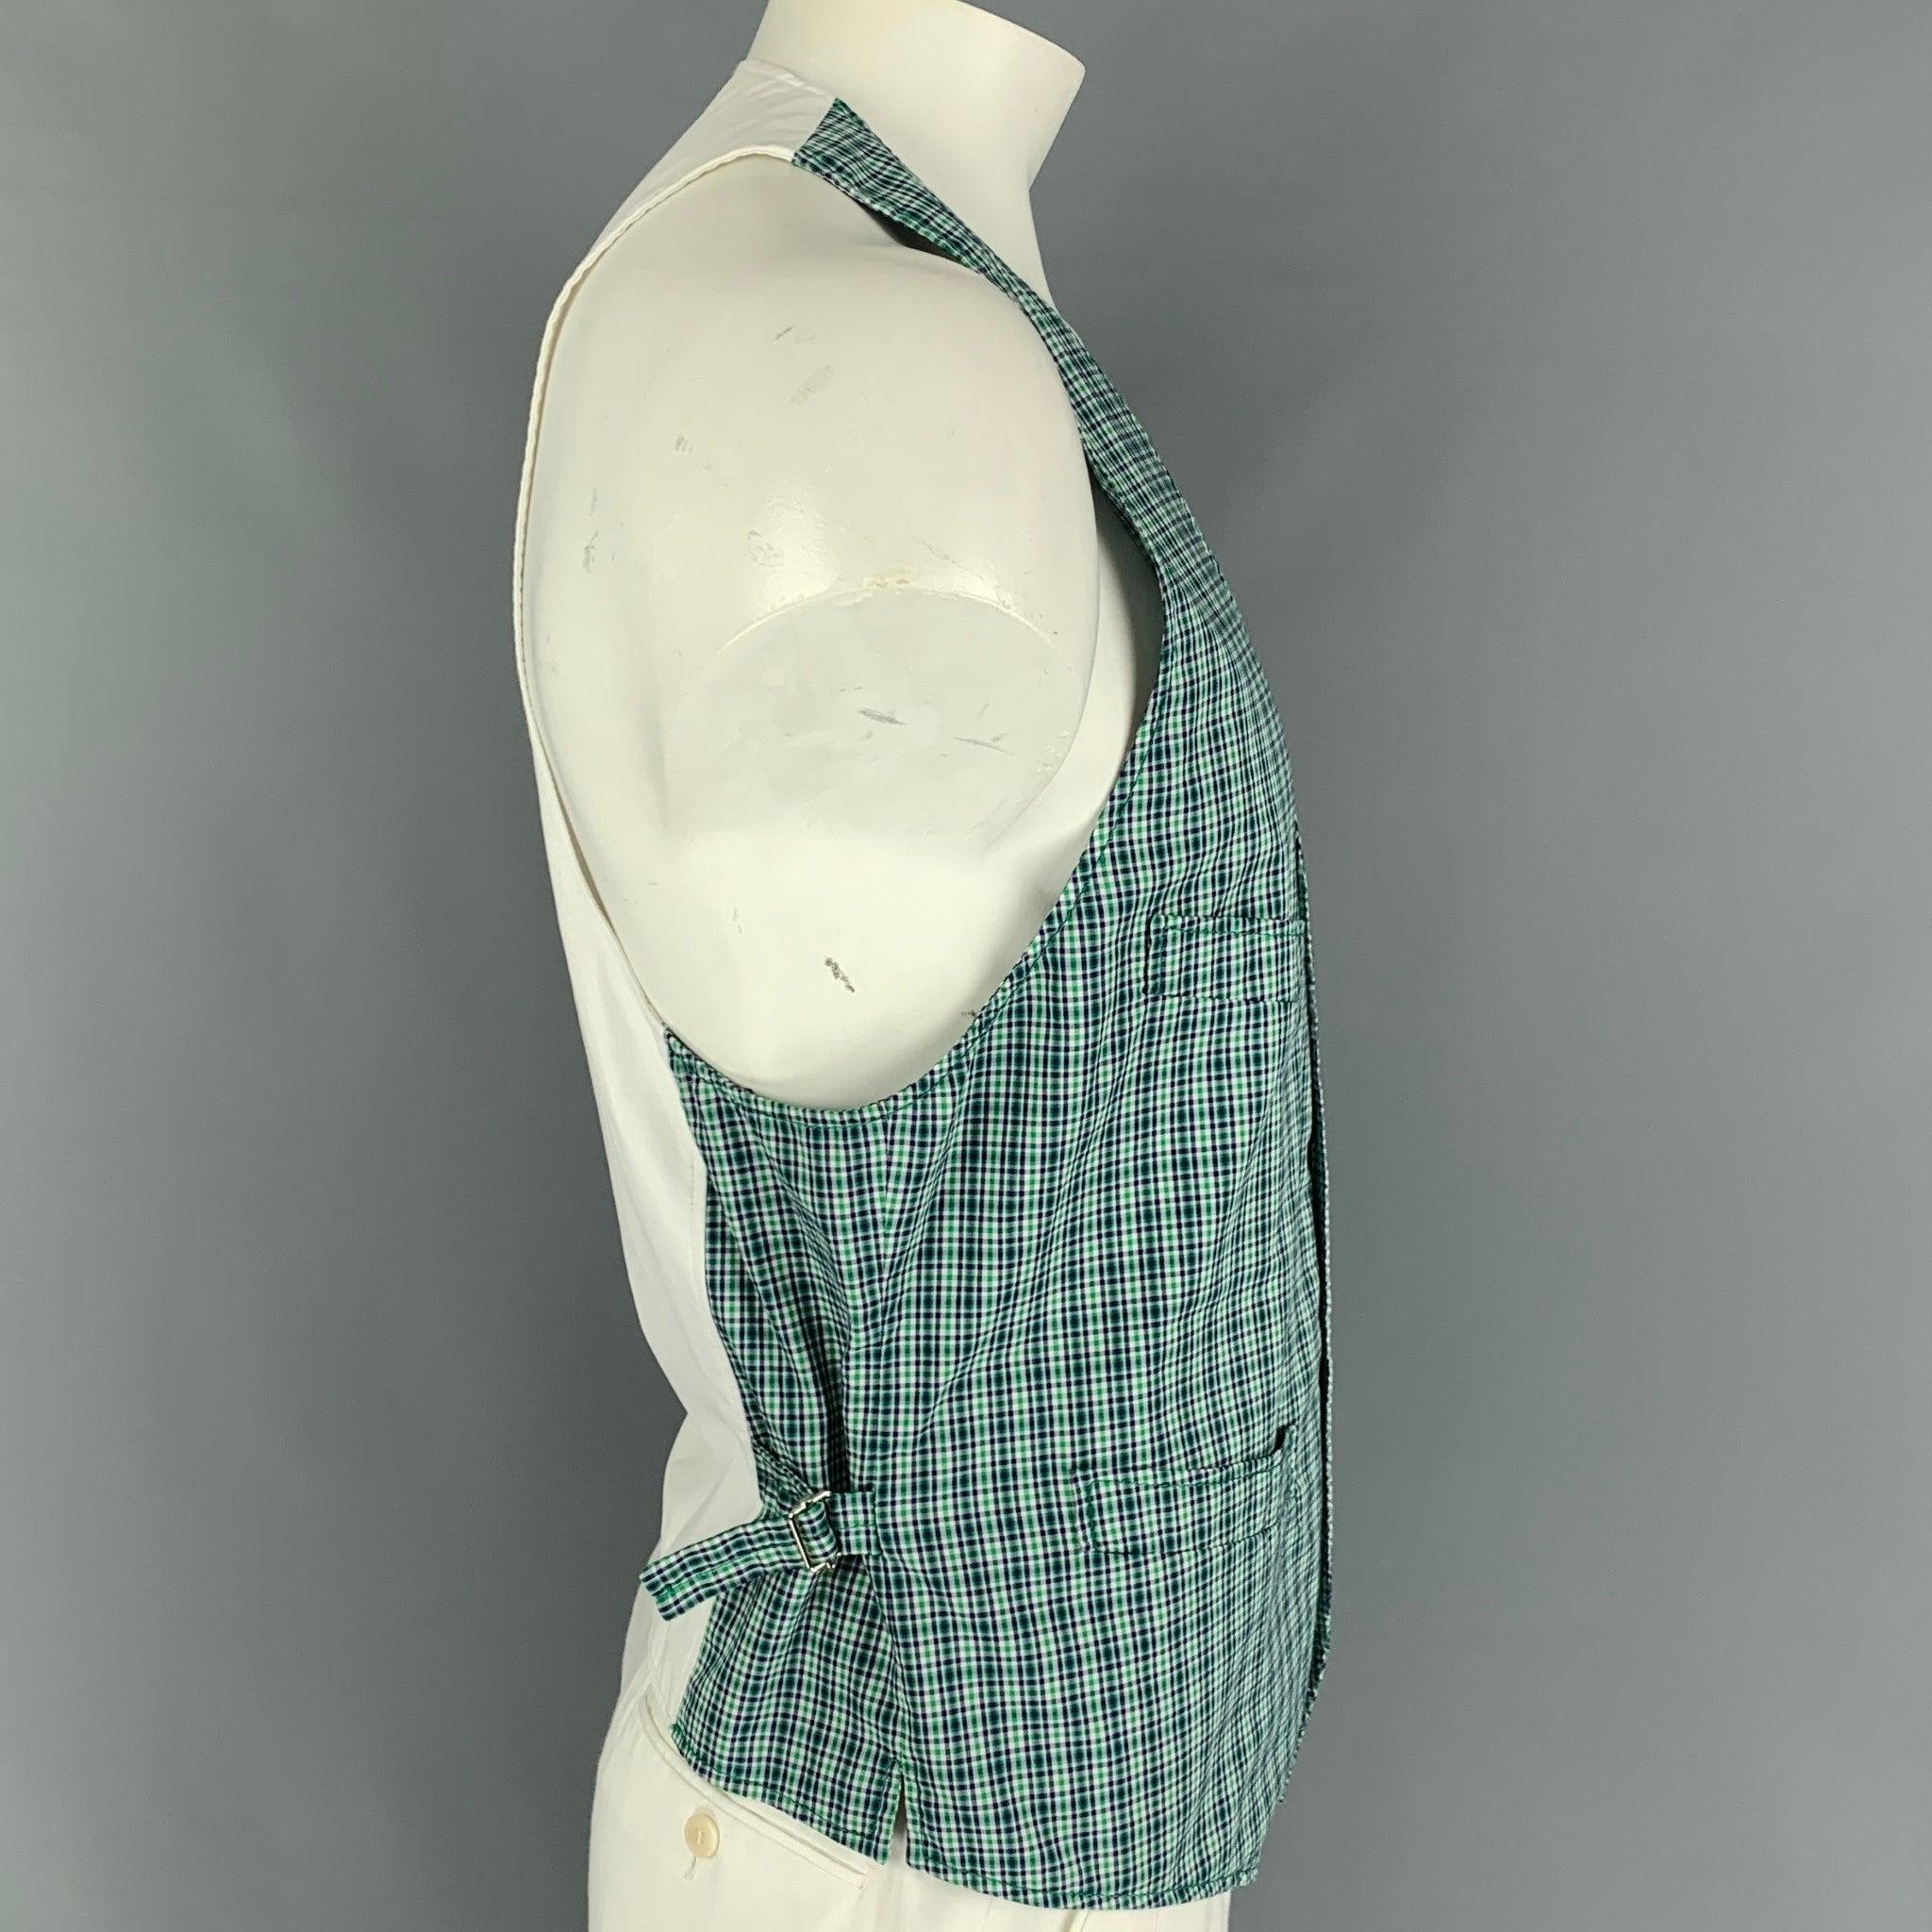 DSQUARED2 Weste aus grün und marineblau karierter Baumwolle mit Fronttaschen, seitlichen Laschen und einem Knopfverschluss. Hergestellt in Italien.
Sehr gut
Gebrauchtes Zustand.  

Markiert:   52 

Abmessungen: 
 
Schultern: 10,5 Zoll  Brustumfang: